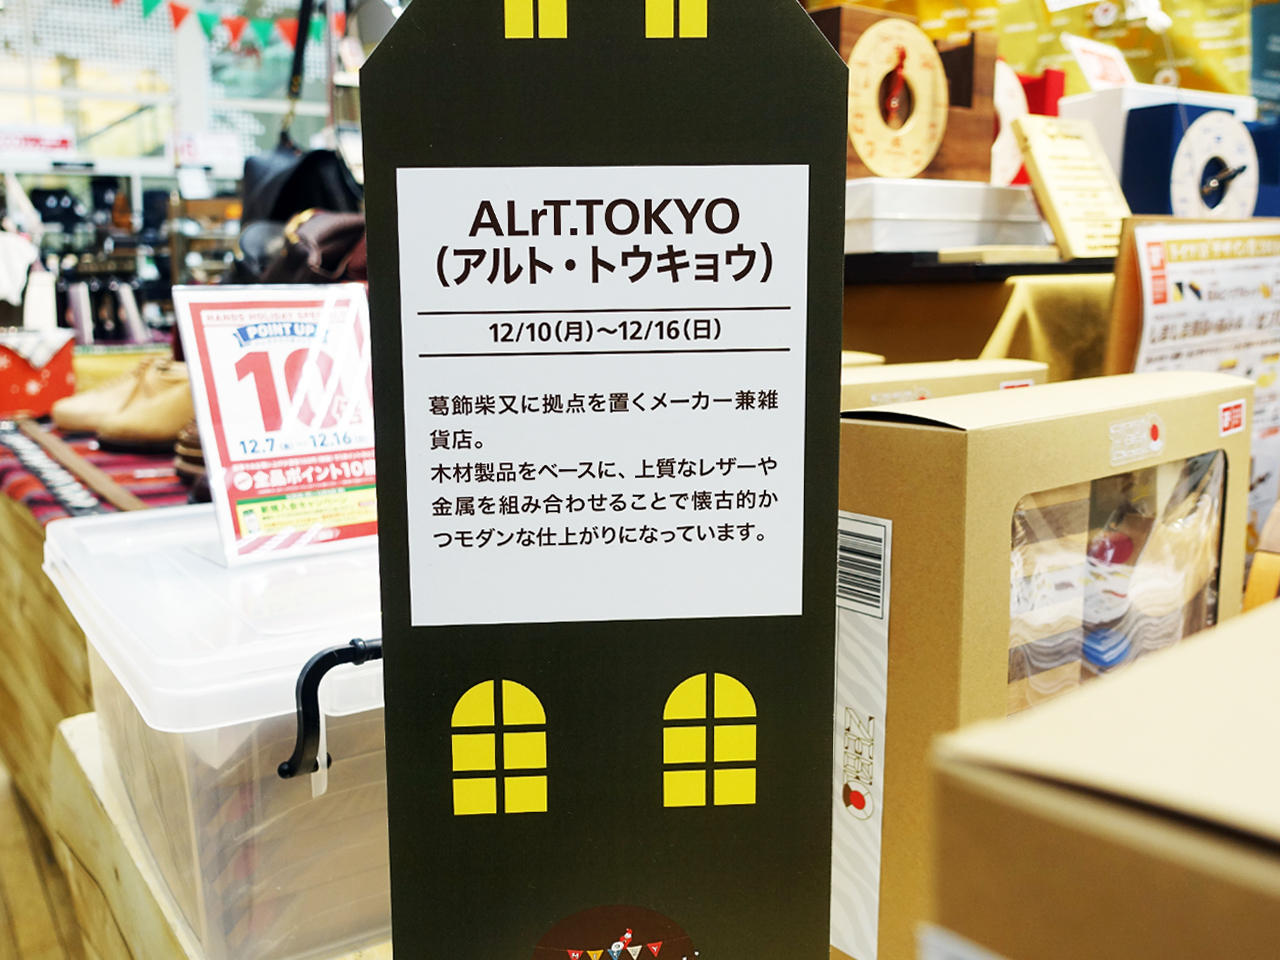 http://alrt.tokyo/news/handsshinjuku2.jpg